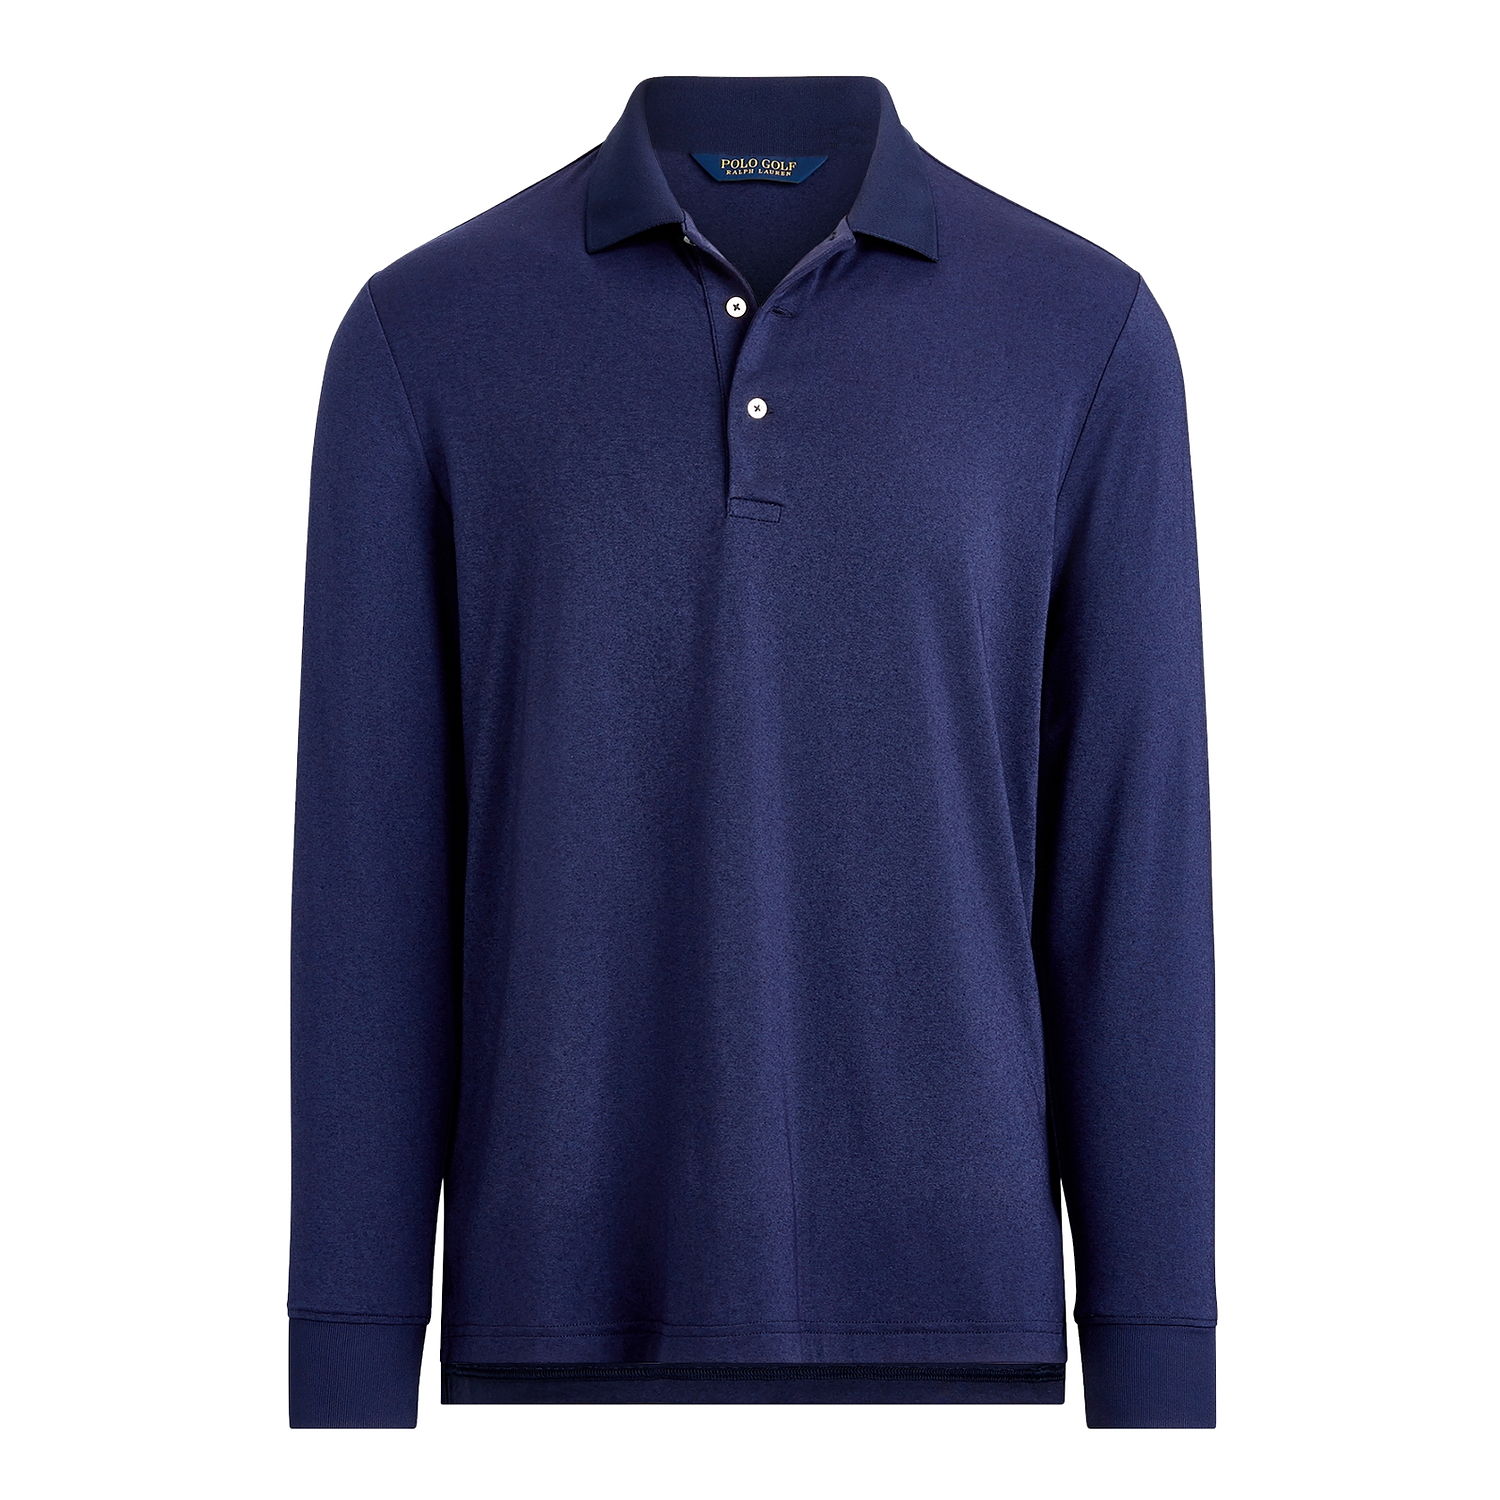 Ralph Lauren Polo Golf Ralph Lauren Mens French Navy Classic Fit Tech Jersey Polo Shirt $158